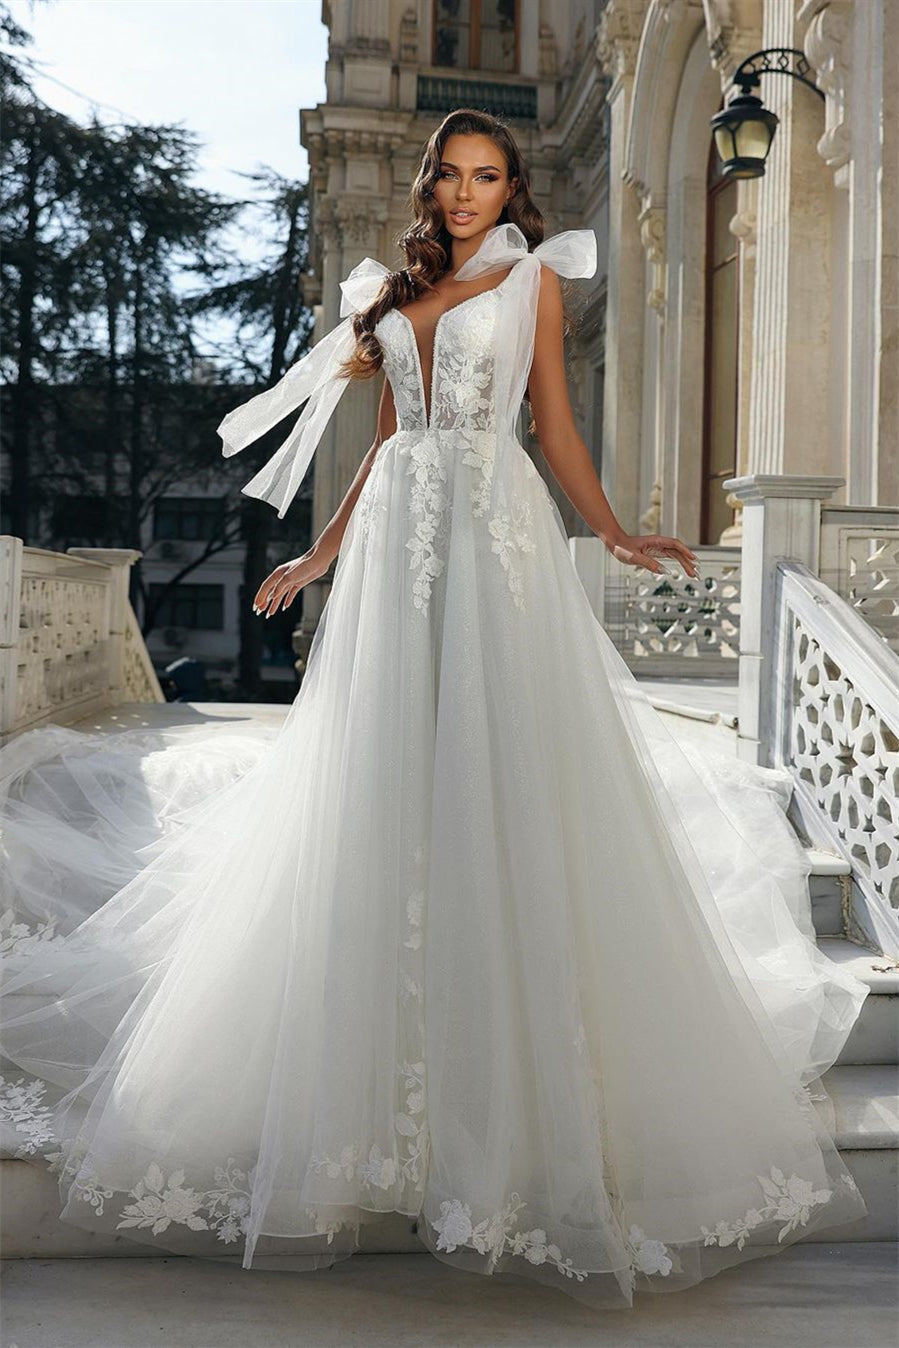 Elegant Long White V-neck Sleeveless Wedding Dress With Lace